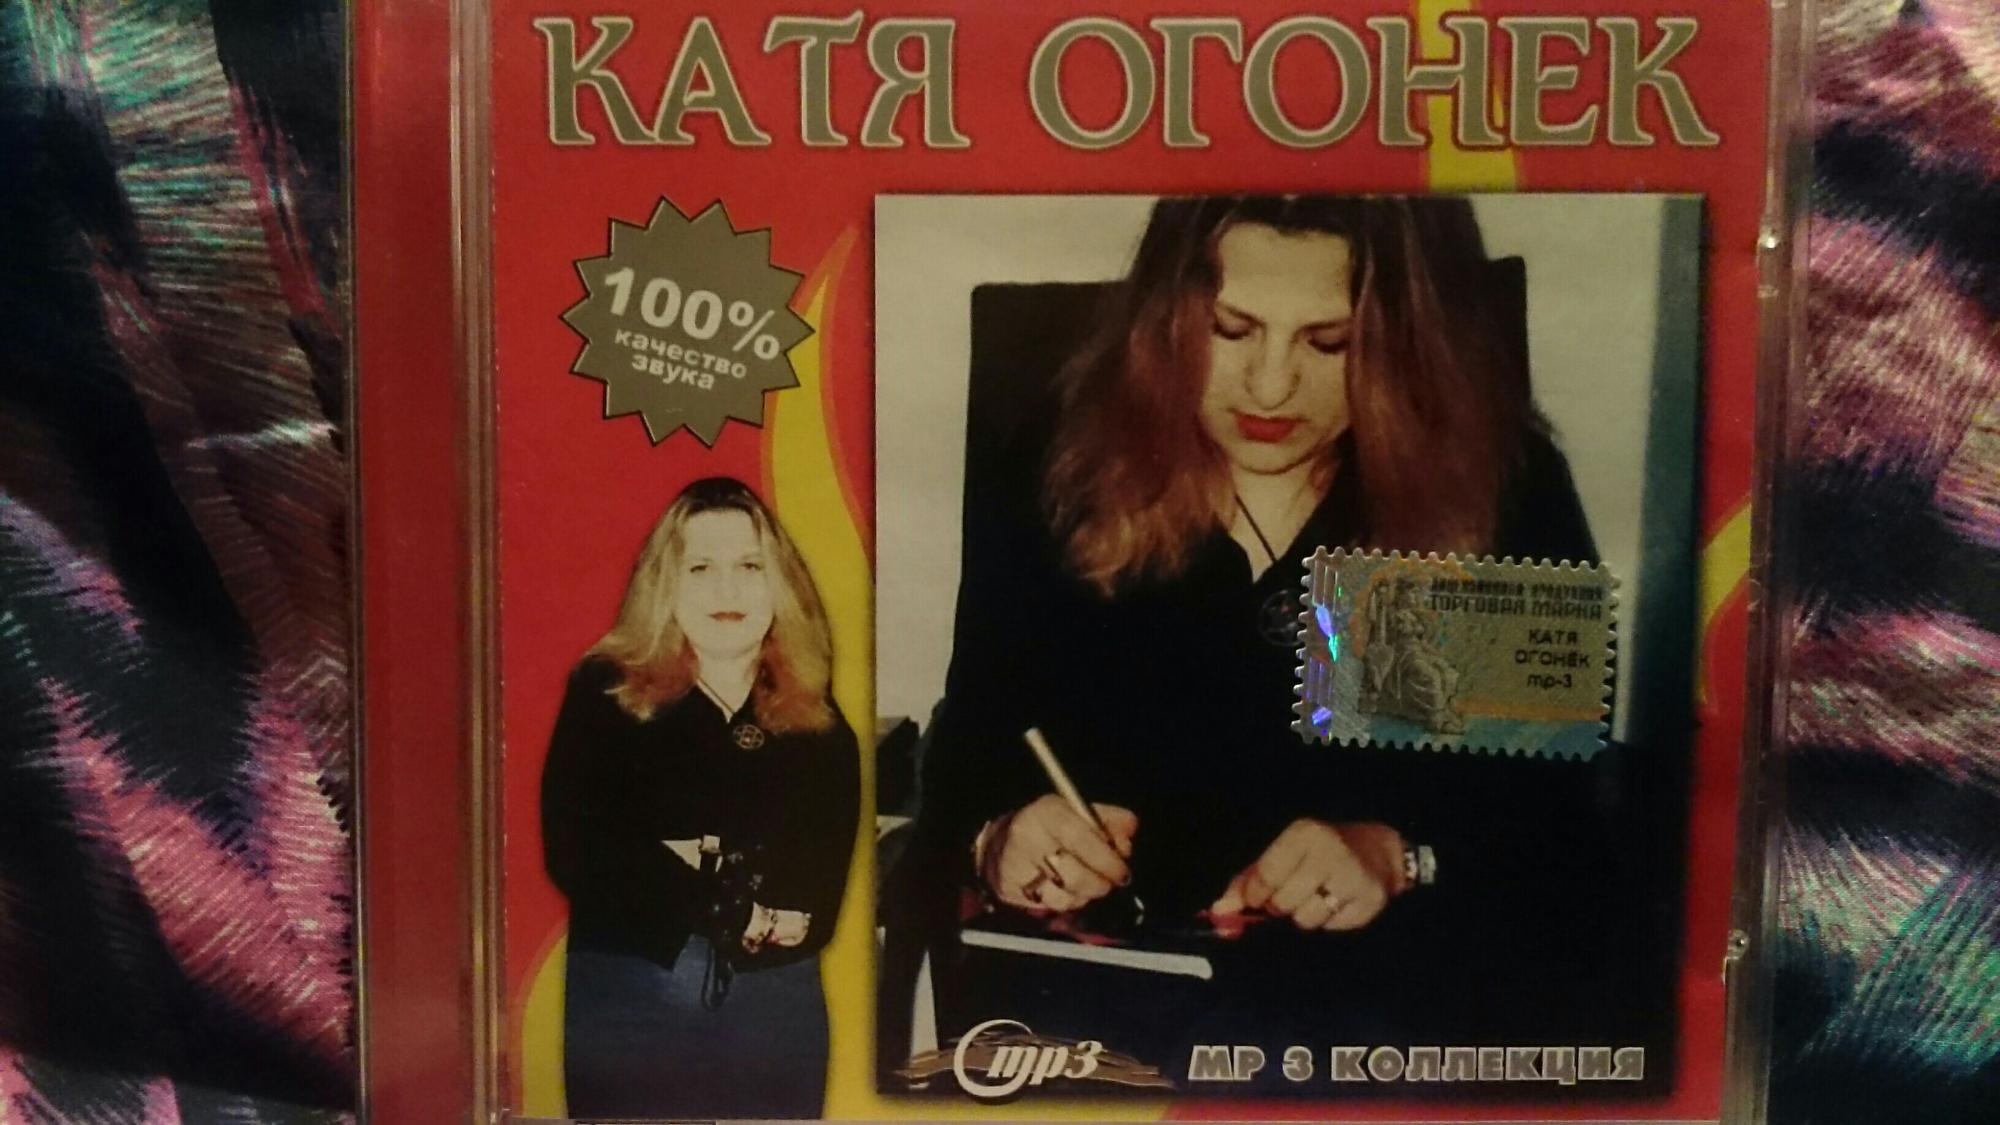 Катя огонёк - аудиокассеты